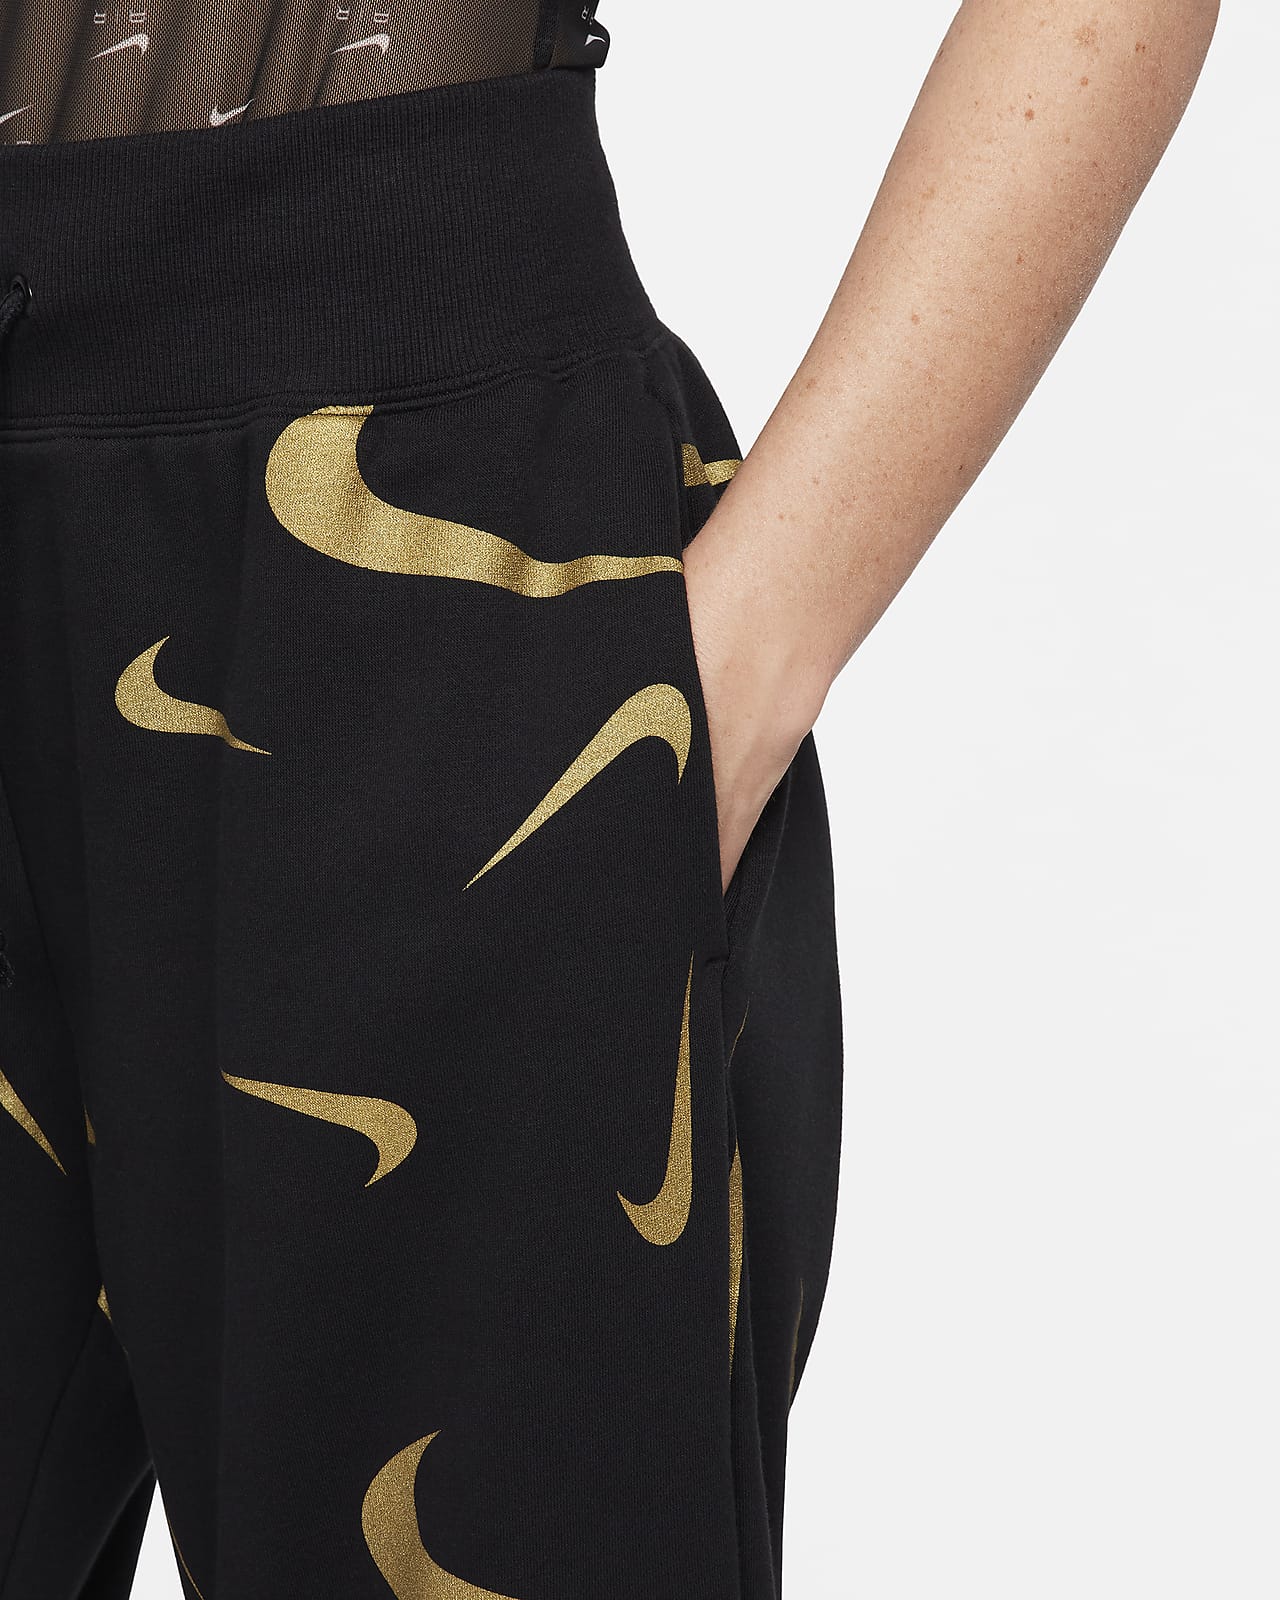 Nike, Sportswear Big Kids' (Girls') Favorite High-Rise Leggings, Black/Gold